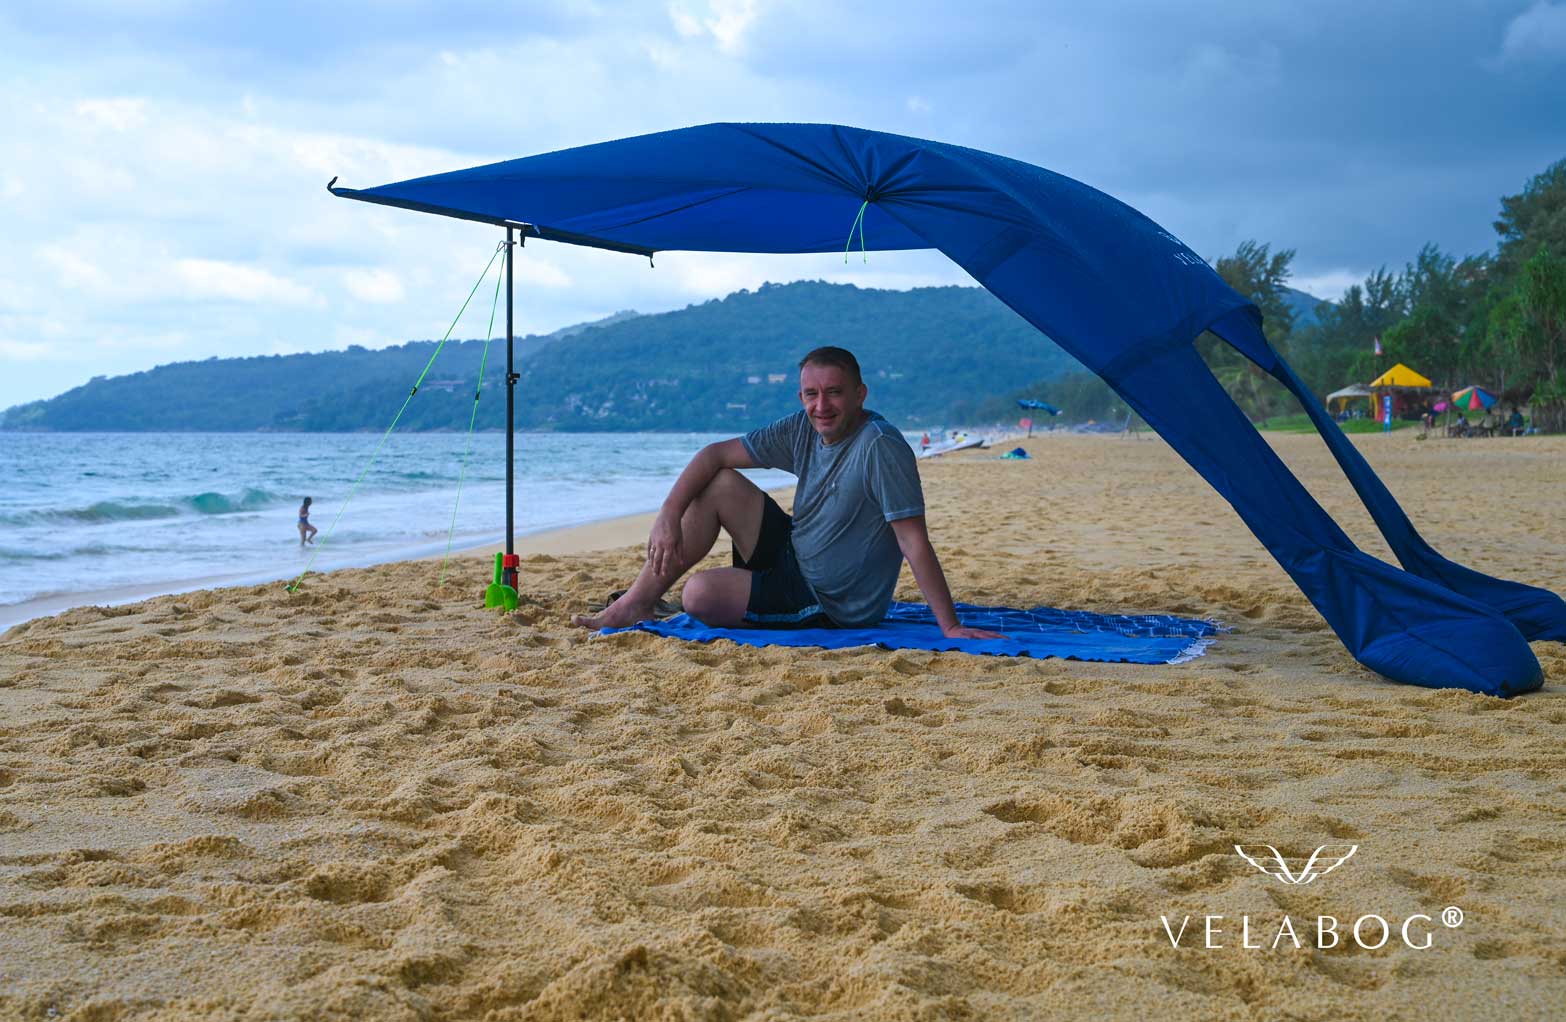 Voile d’ombrage tente plage Velabog Breeze, bleu nuit. Meilleure protection anti-UV sur une plage thaïlandaise même en cas d’averse. Le meilleur auvent de plage. Option de montage par vent faible à fort. Vue de côté. Personnes.